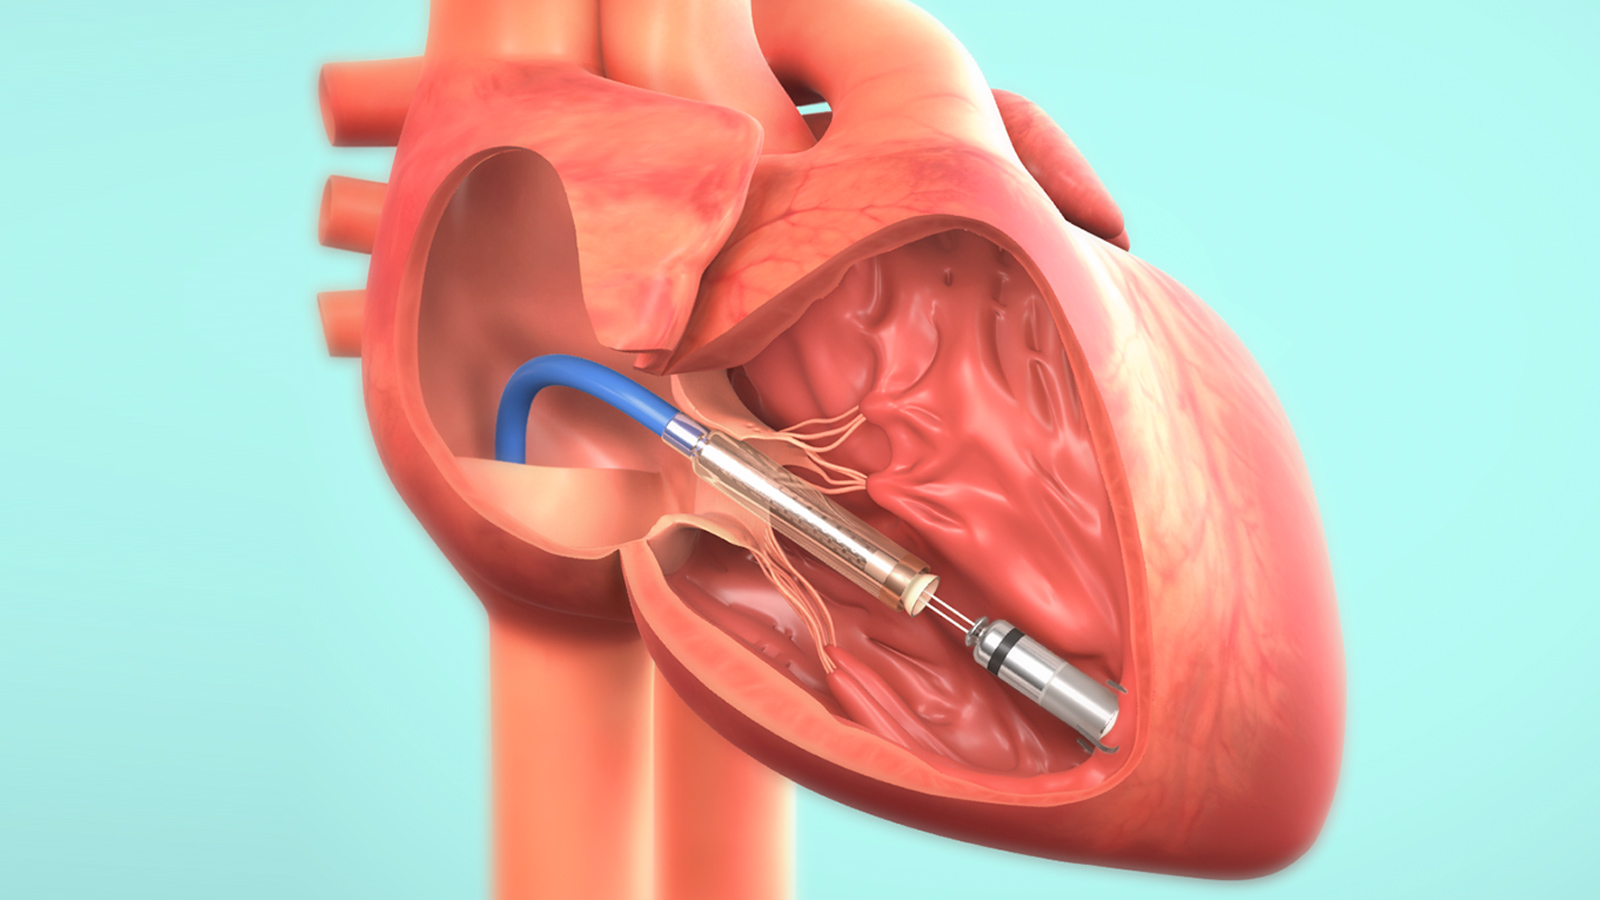 Al Fatebenefratelli di Benevento il primo pacemaker bicamerale invisibile